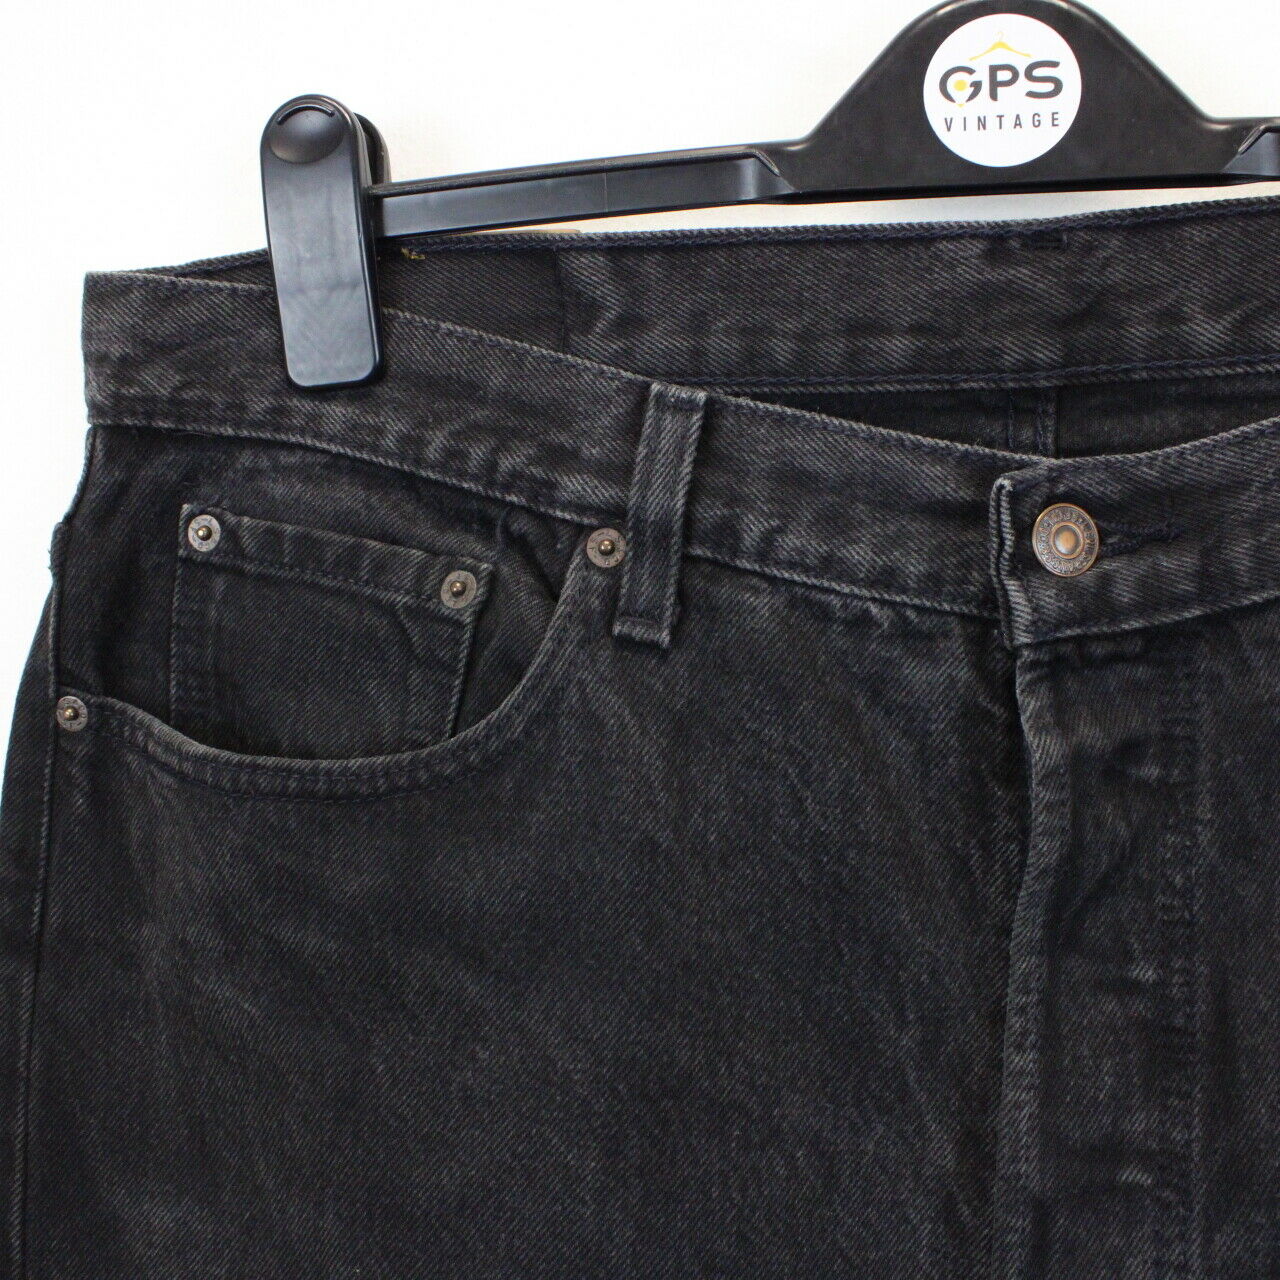 LEVIS 501 Jeans Black Charcoal | W38 L34